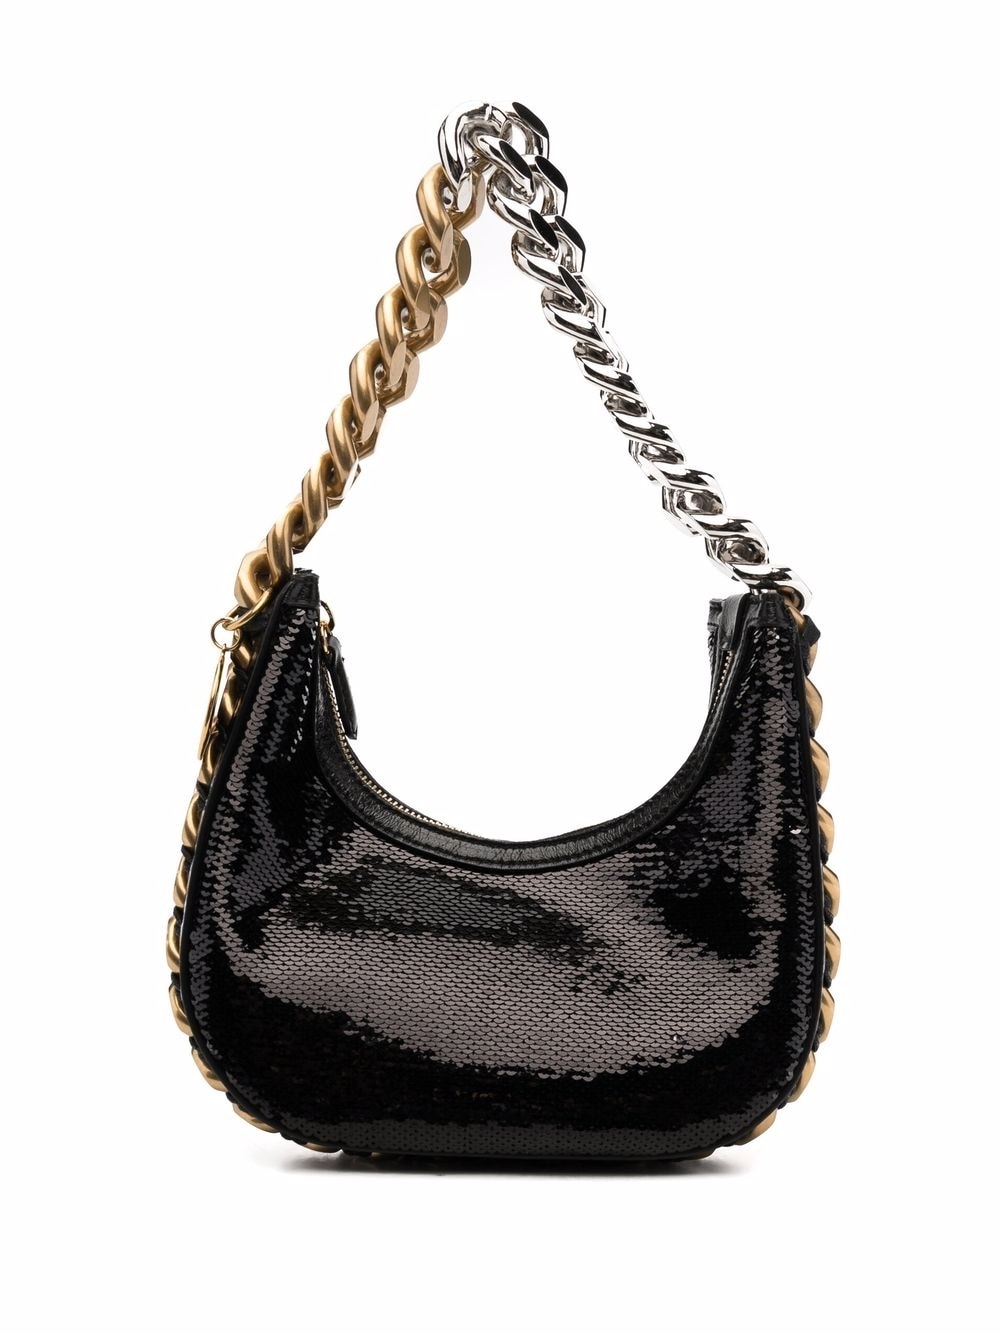 Stella McCartney sequin-embellished shoulder bag - Black